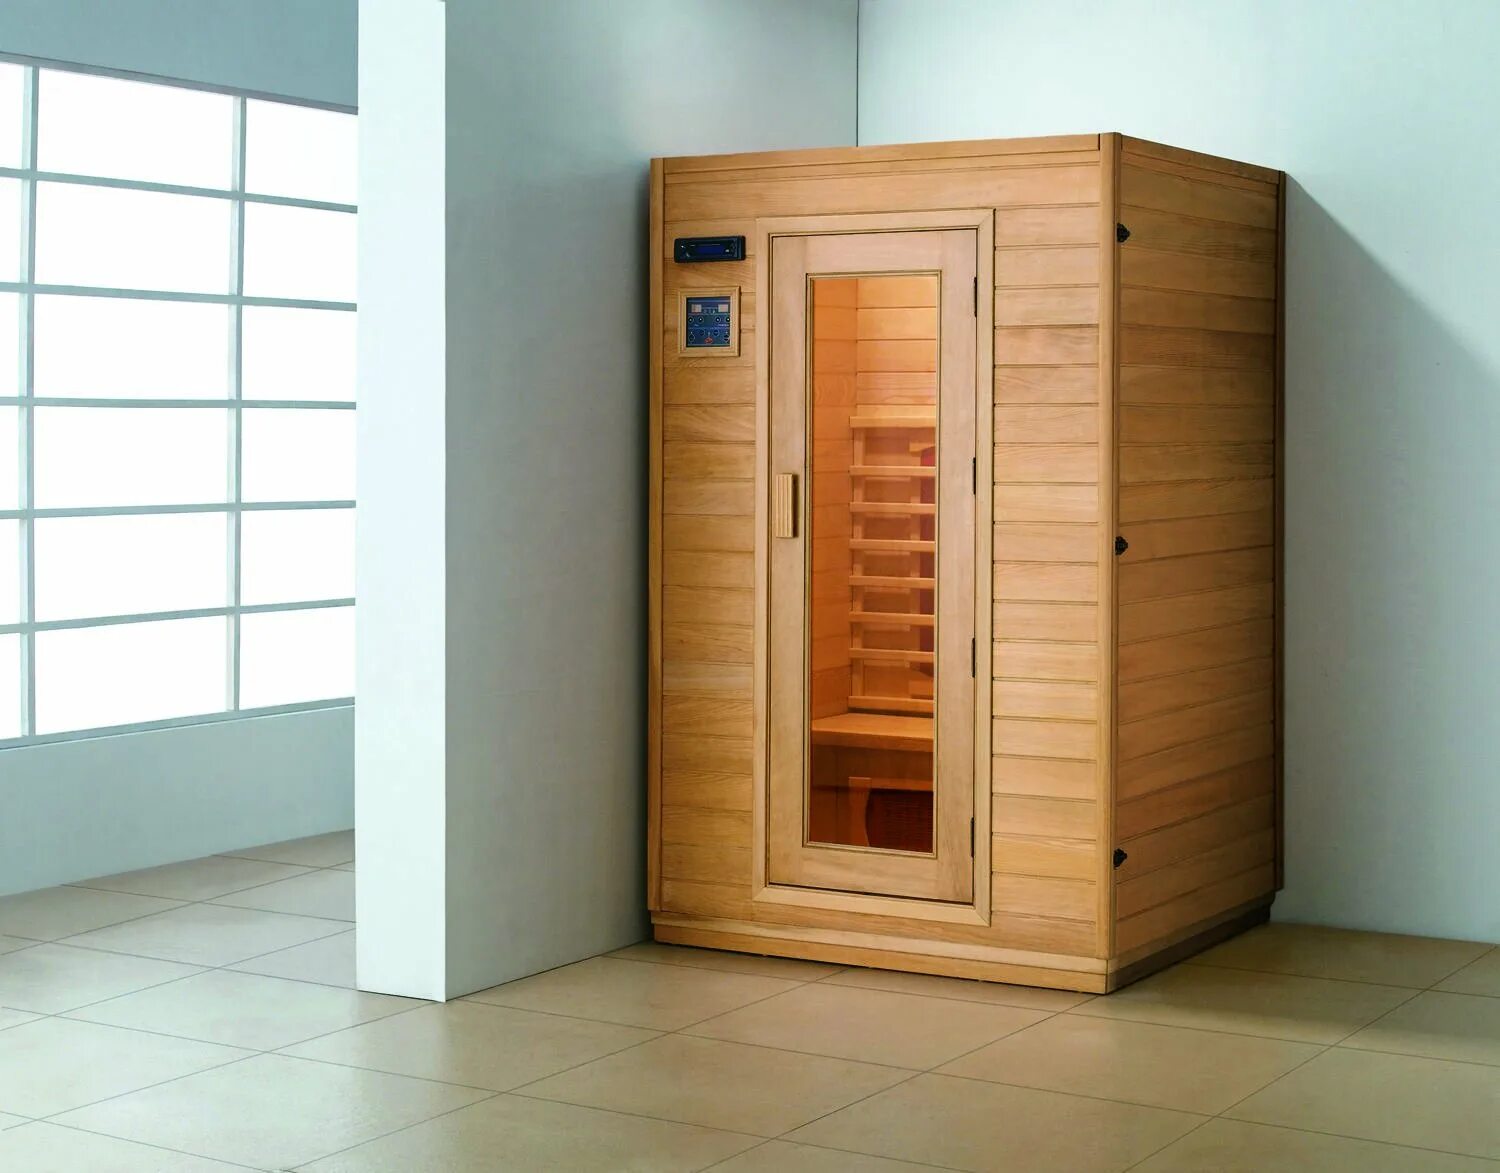 Электрическая баня купить. Инфракрасная мини-сауна (85/85/135 см). Кабина сауна 900x1200. Мини сауна для квартиры. Инфракрасная сауна.